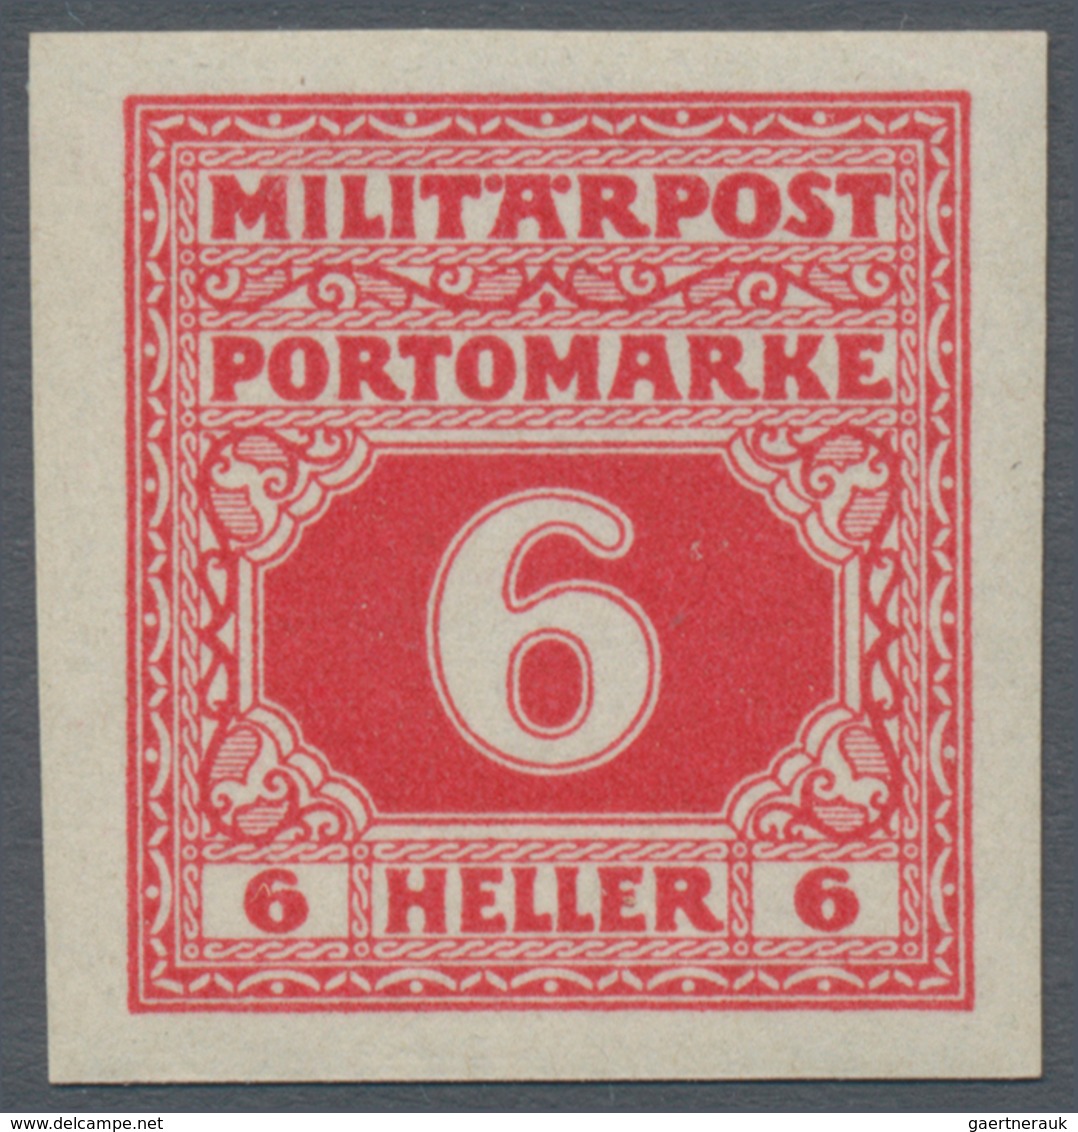 Bosnien und Herzegowina (Österreich 1879/1918): 1919, Ziffern-Portomarken 2 H bis 3 Kr. kompletter U